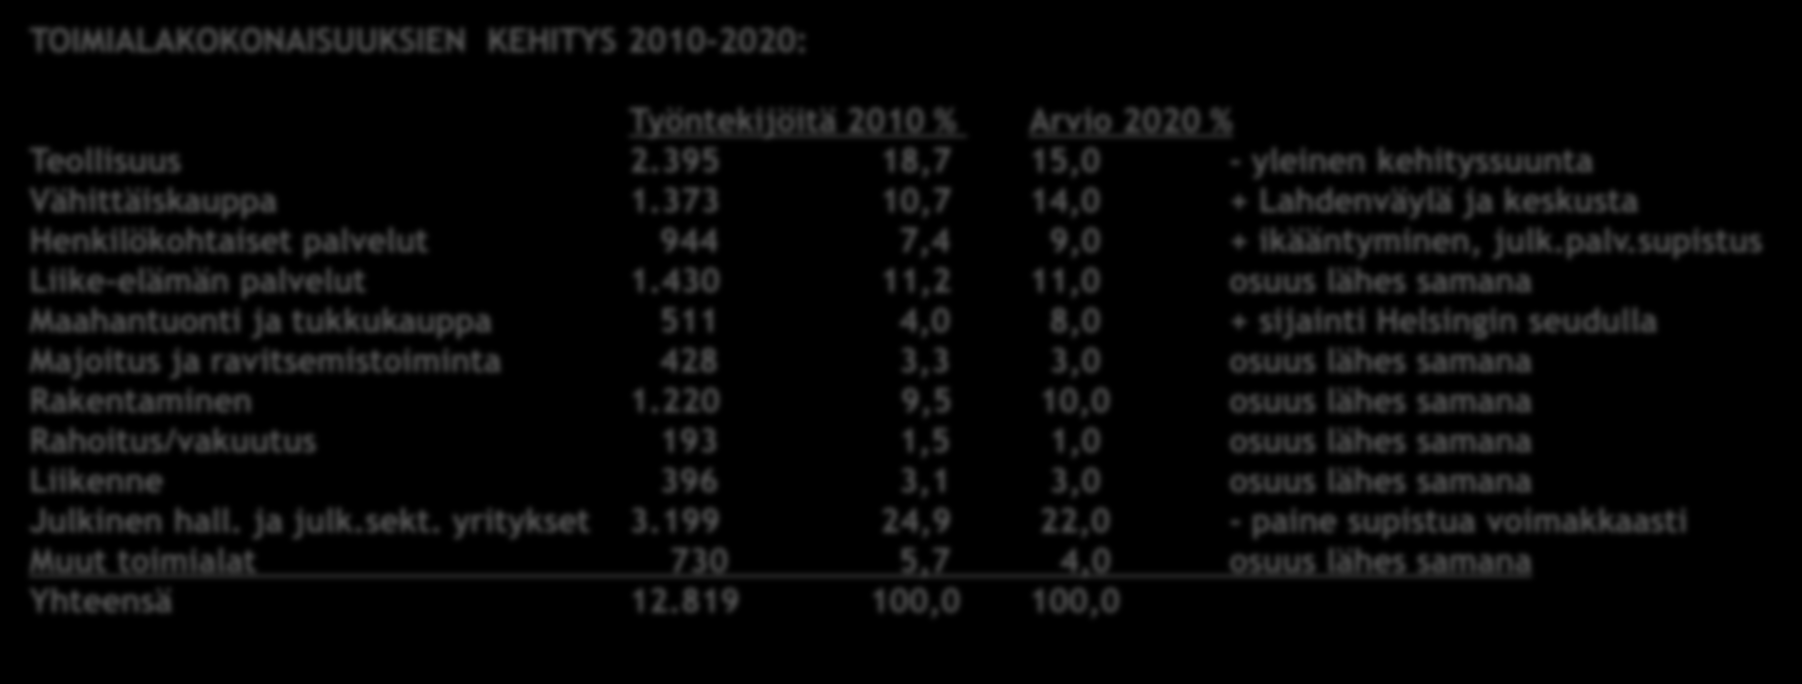 Järvenpään kaupungin yritysprofiili TOIMIALAKOKONAISUUKSIEN KEHITYS 2010-2020: Päivitetty 2.9.2011 Työntekijöitä 2010 % Arvio 2020 % Teollisuus 2.